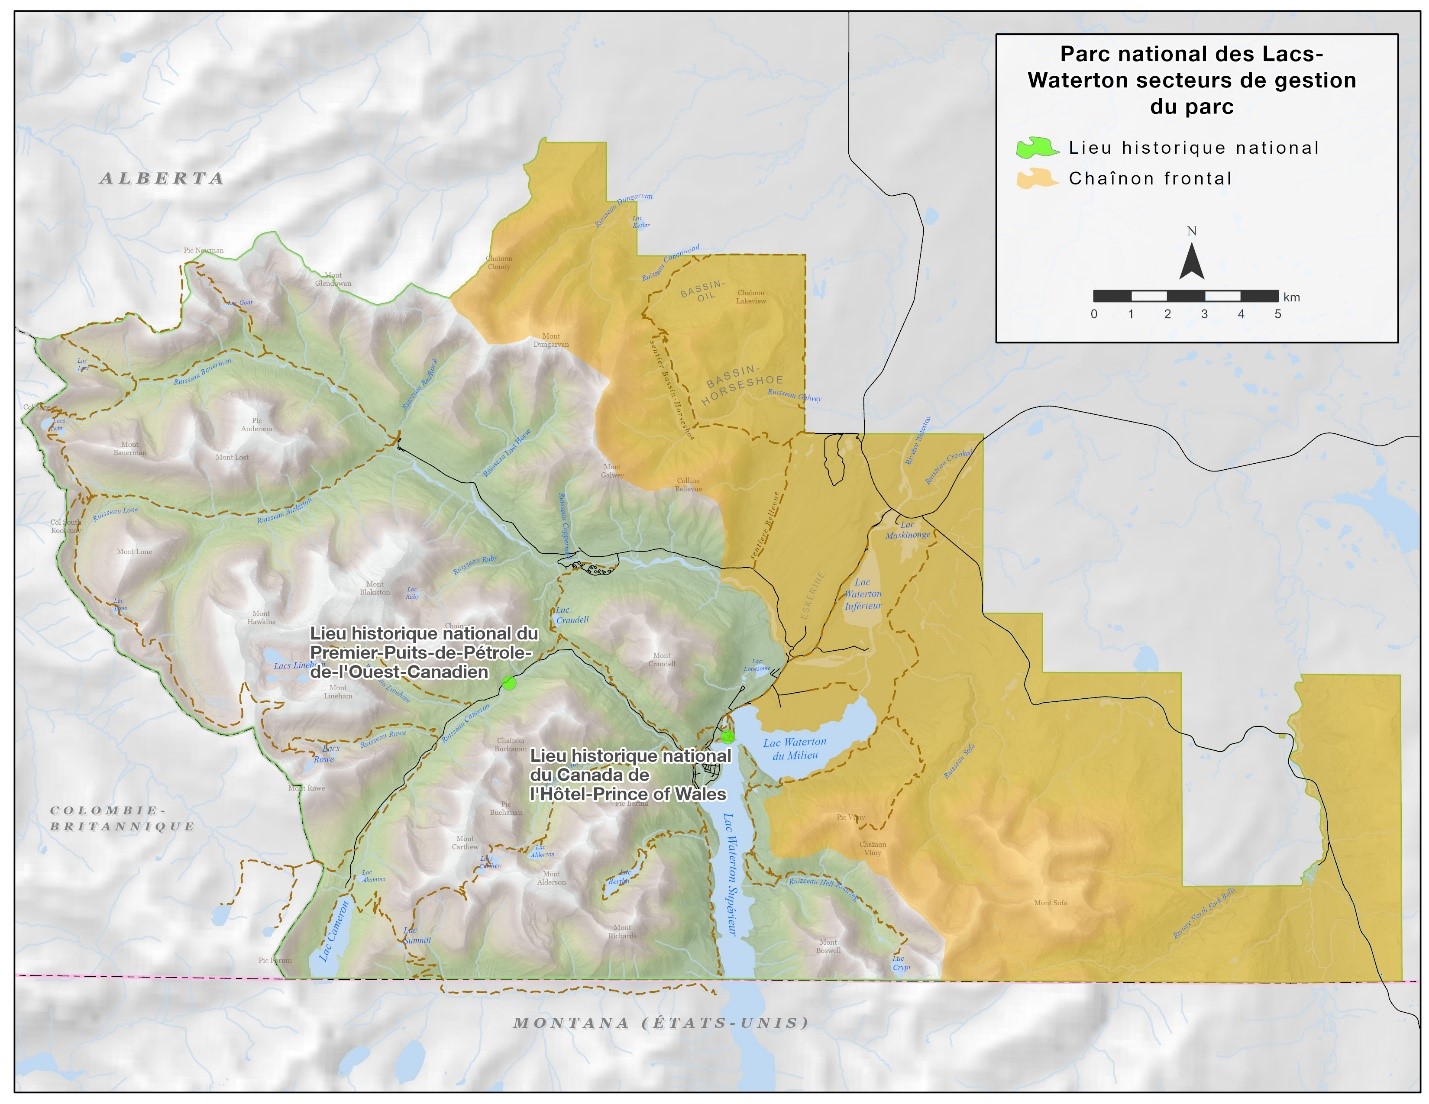 Carte 3 : Secteurs de gestion du parc national des Lacs-Waterton